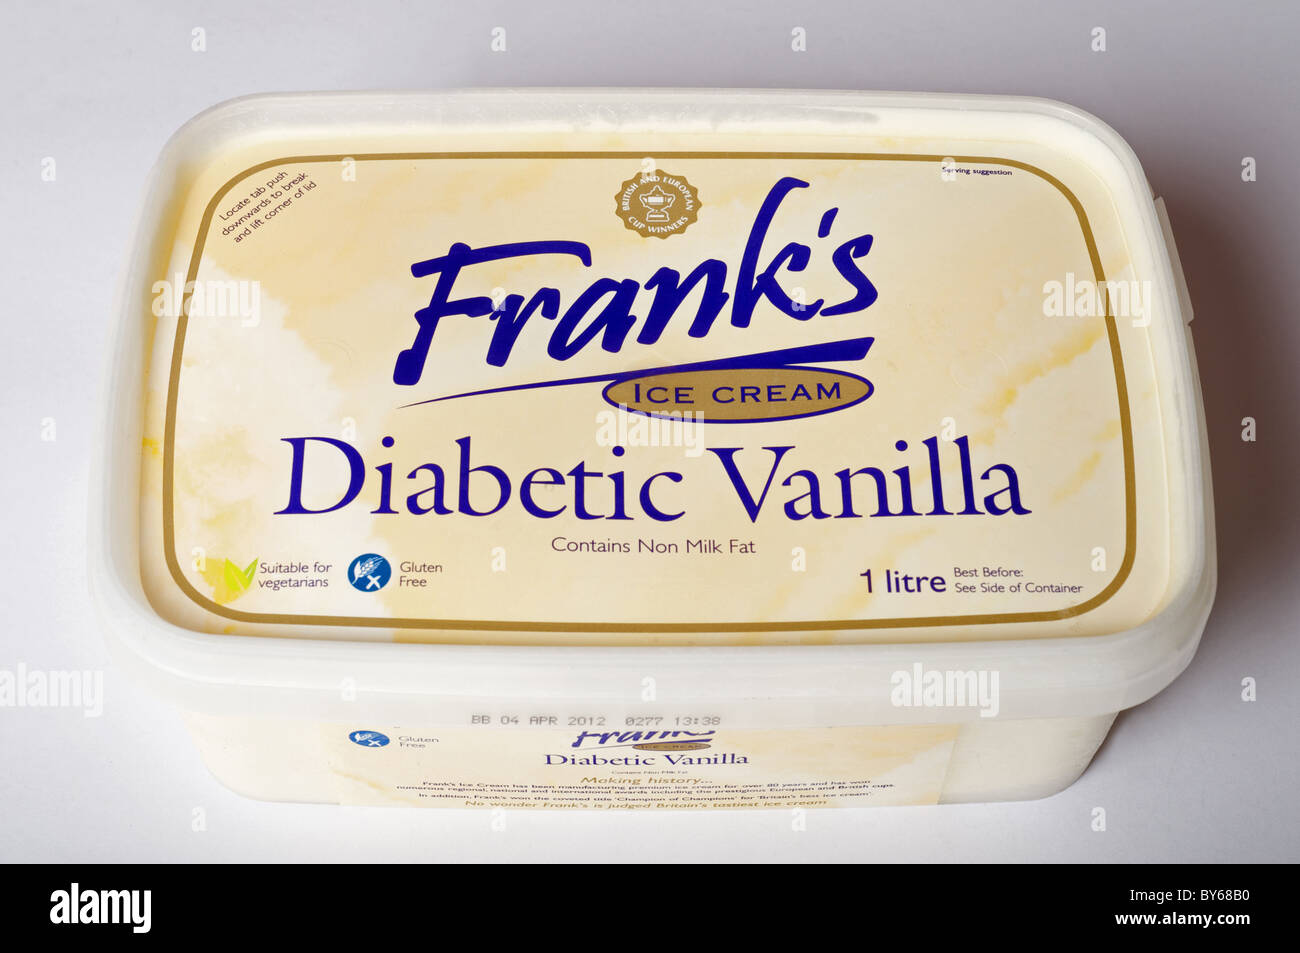 Frank's diabetic vanilla ice cream Stock Photo